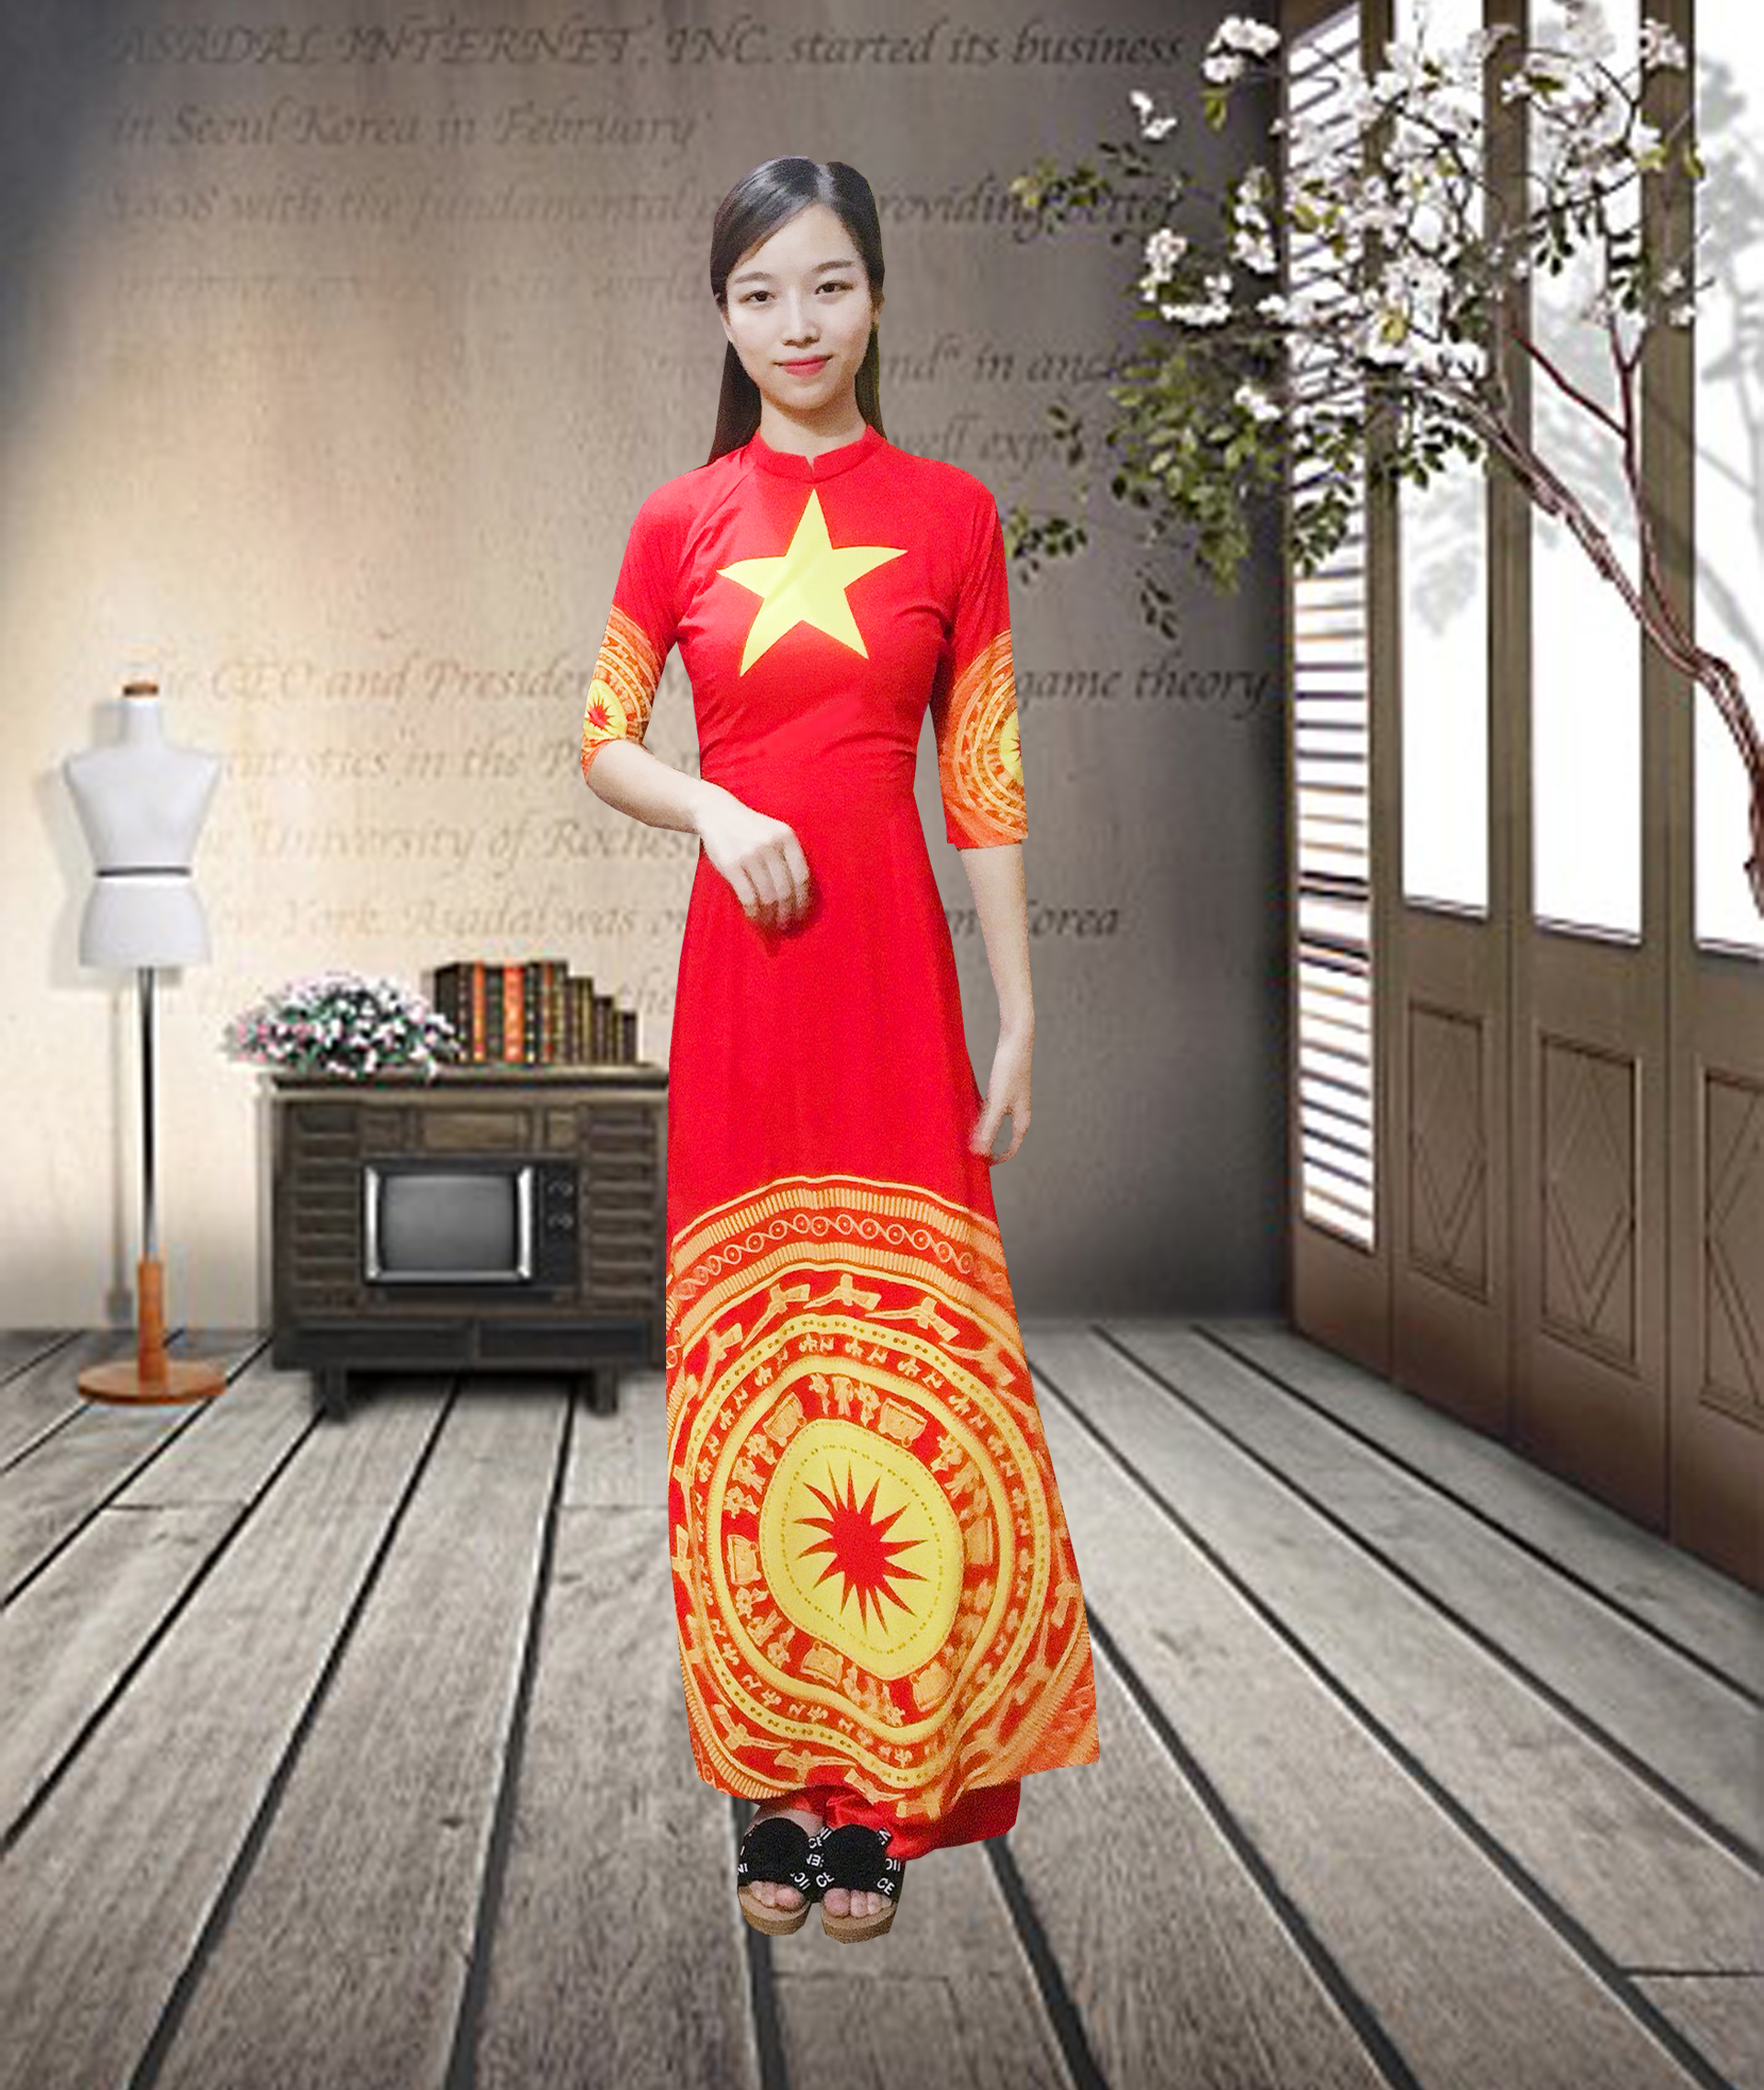 Cắt, gấp, dán cờ đỏ sao vàng là hoạt động truyền thống của người Việt Nam từ lâu đời. Trong năm 2024, bạn vẫn có thể thấy những chiếc cờ mẫu năm cánh và lá cờ đỏ sao vàng toả sáng trên khắp các phố phường. Nếu bạn đam mê nghệ thuật và sáng tạo, hãy trải nghiệm cảm giác gấp, cắt, dán cờ đỏ sao vàng bằng chính tay mình để nắm bắt tinh hoa của văn hóa dân tộc.